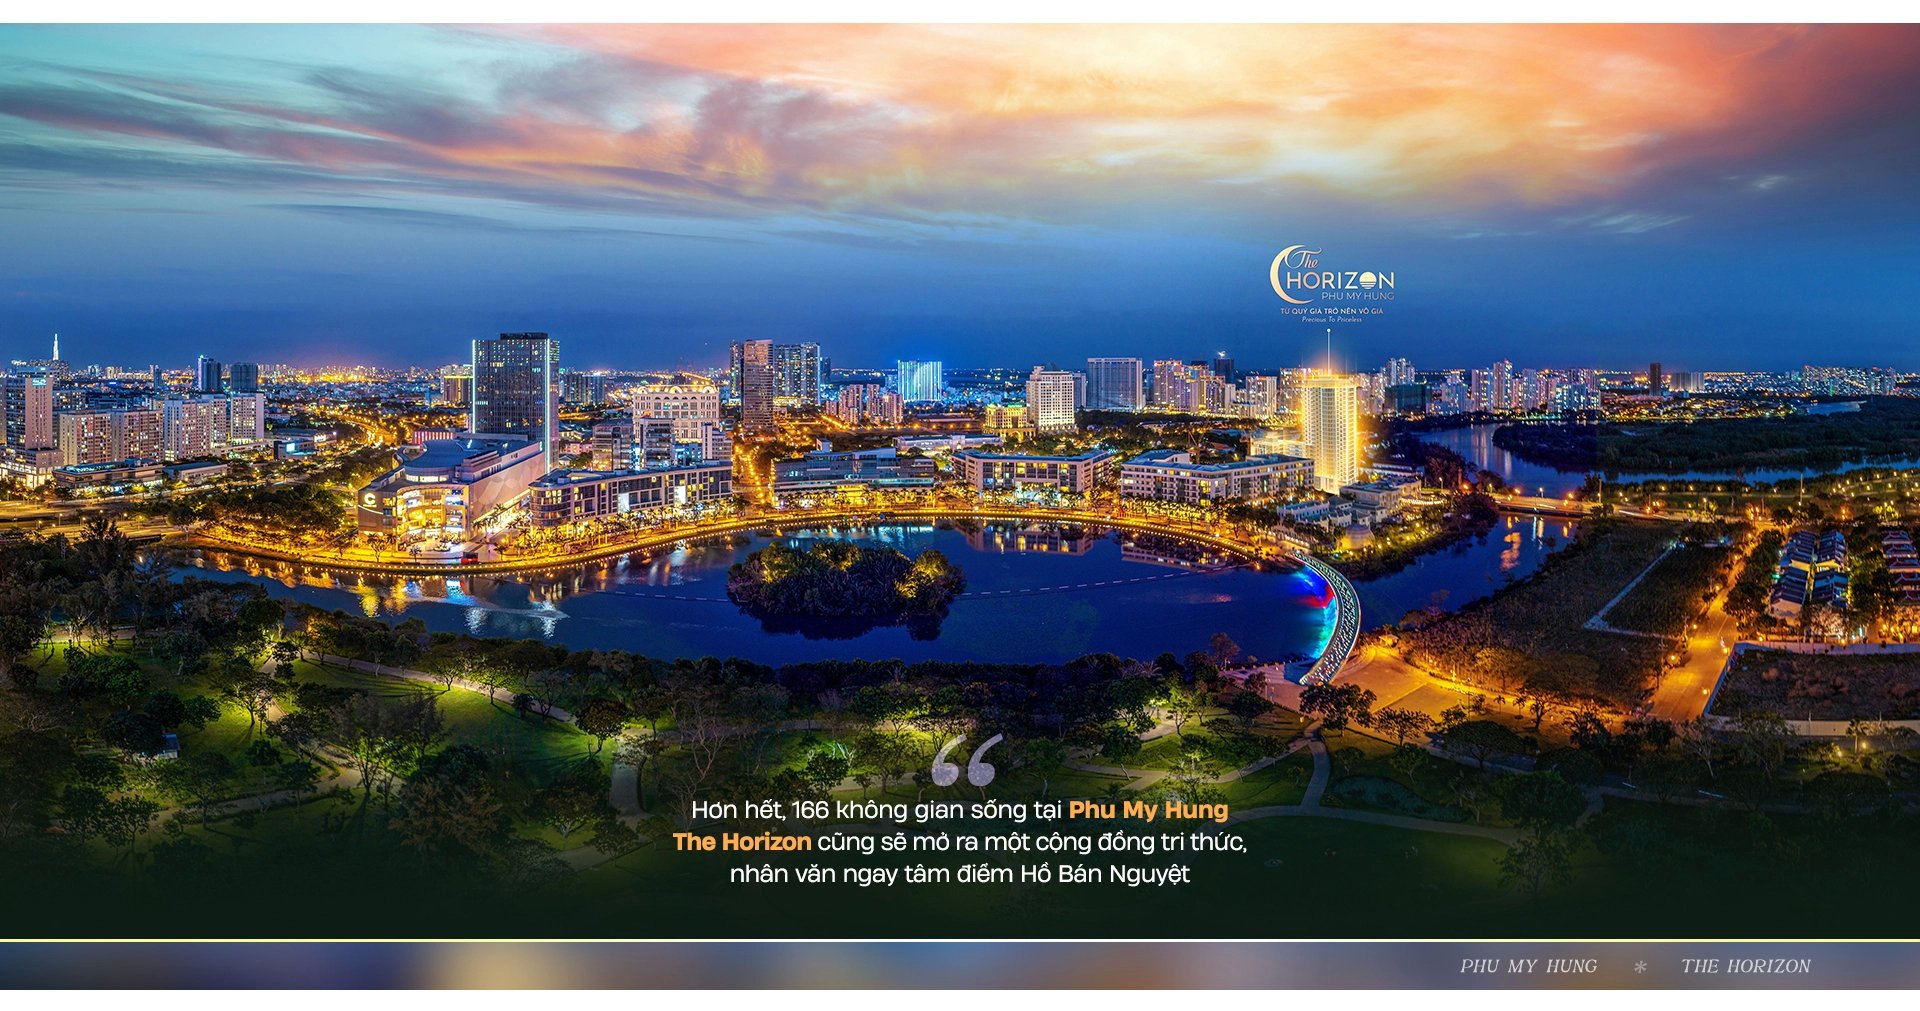 Phú Mỹ Hưng mở bán căn hộ Horizon Hồ Bán Nguyệt 2 view đặc biệt nhất dự án. Xem nhà gọi ngay - Ảnh chính